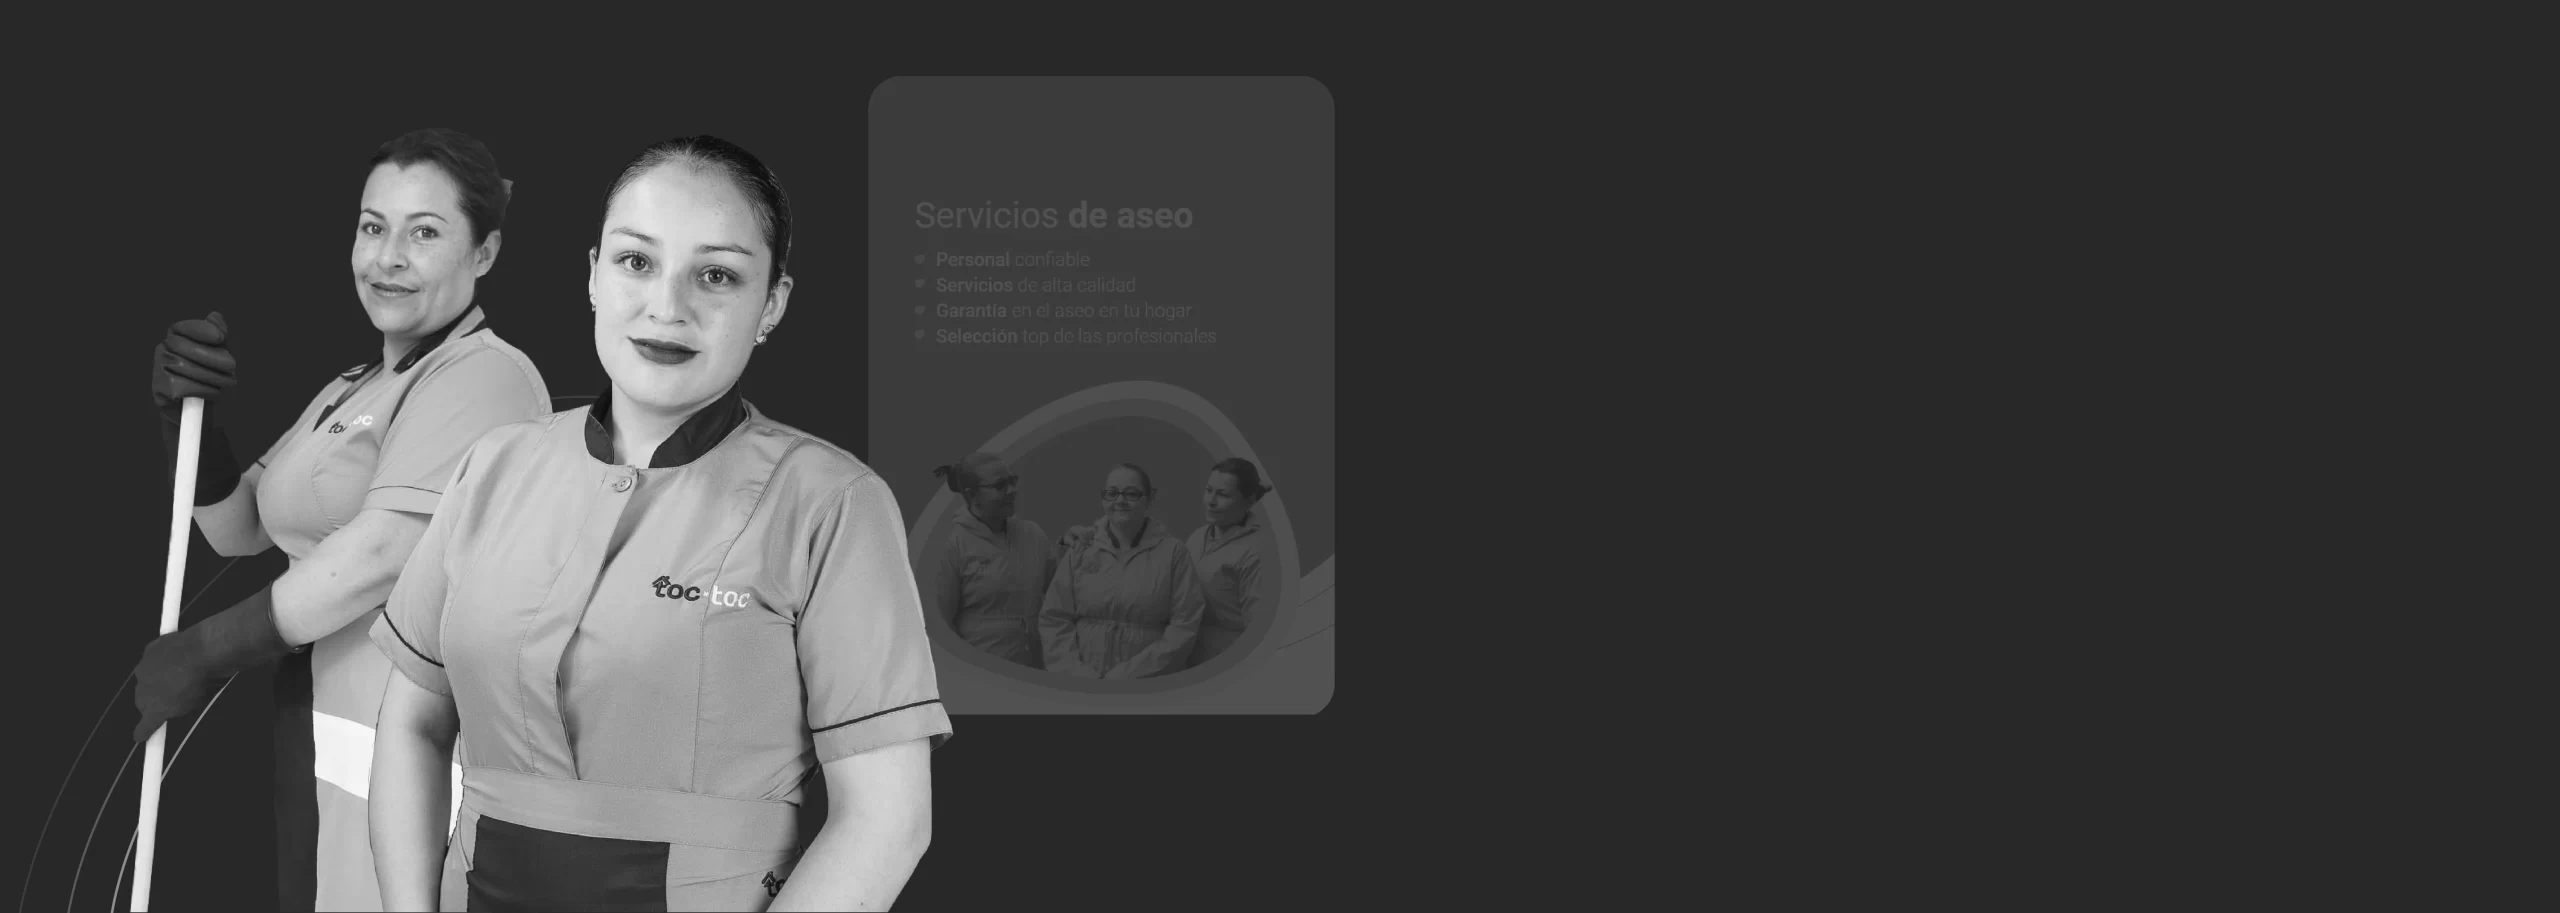 empleadas del servicios de aseo junto a la pagina principal de toctoc vista desde una tablet